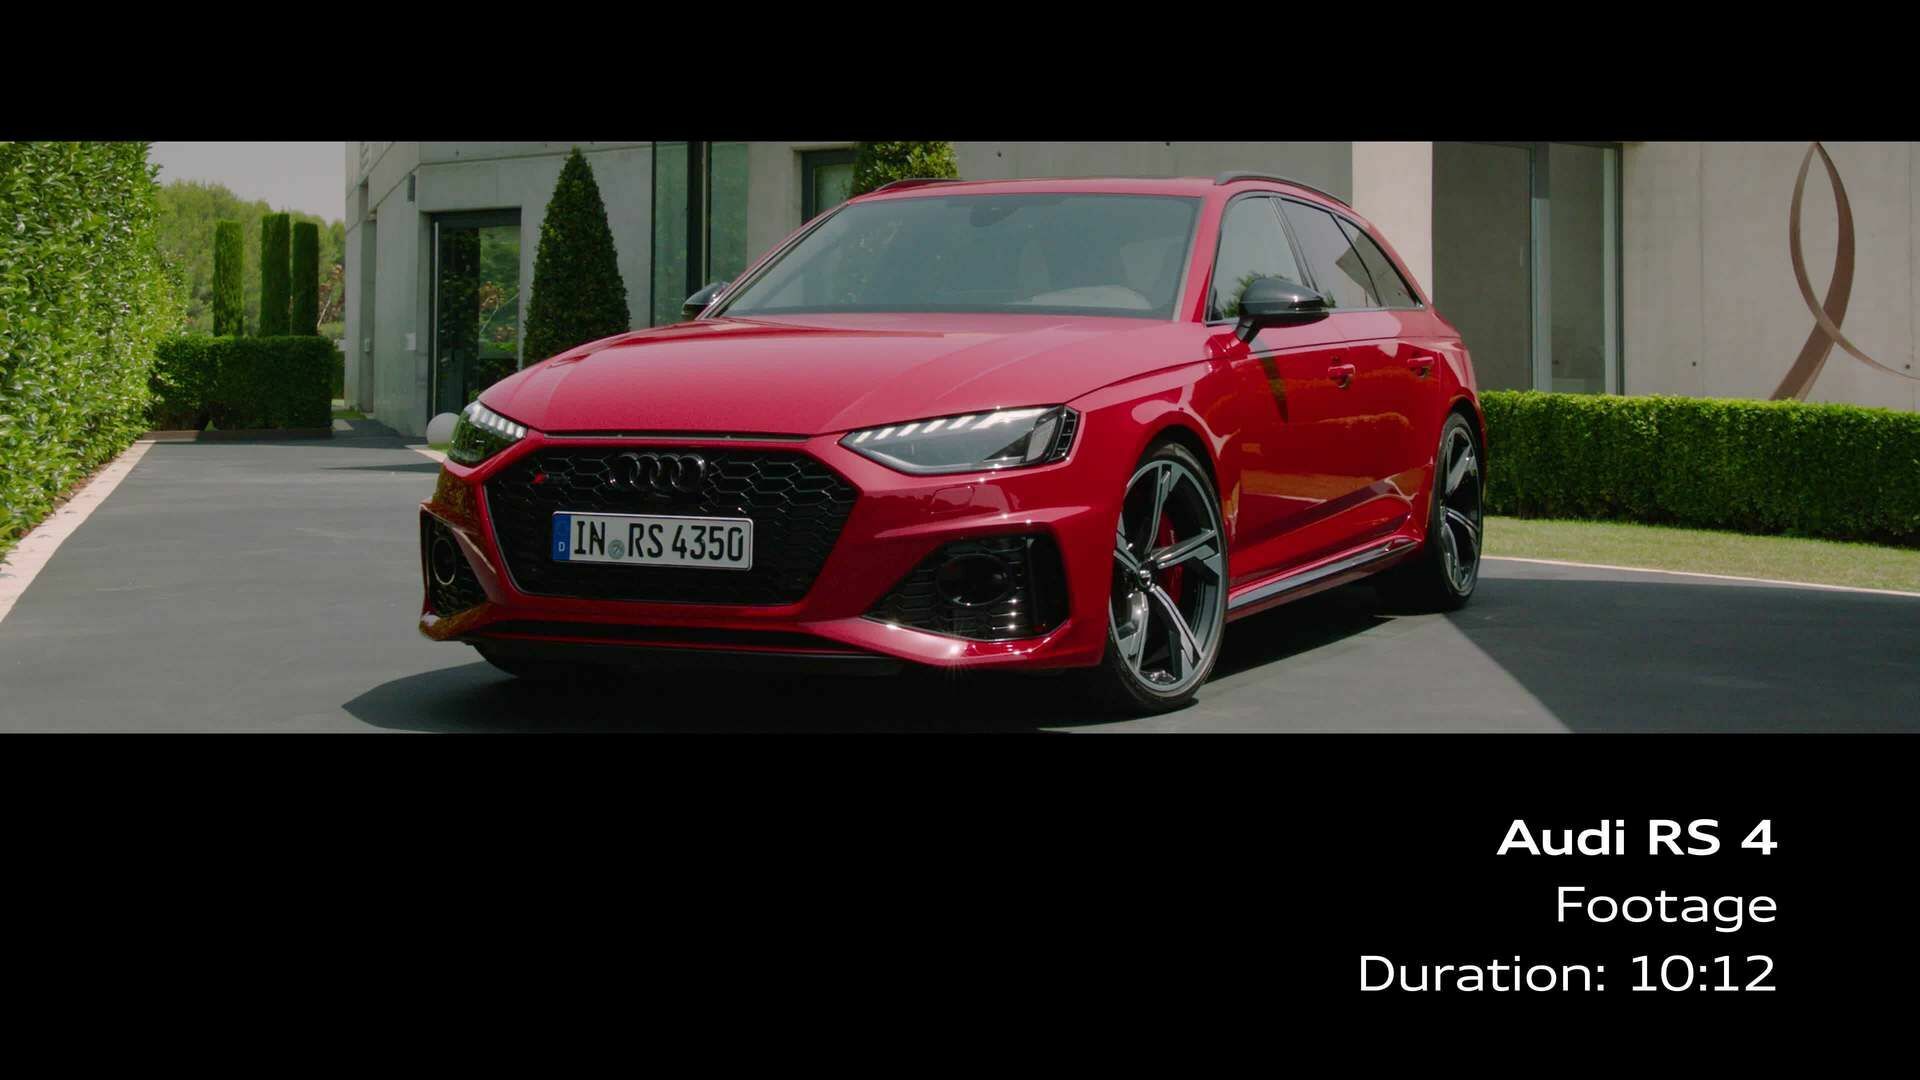 Audi RS 4 Avant (Footage)